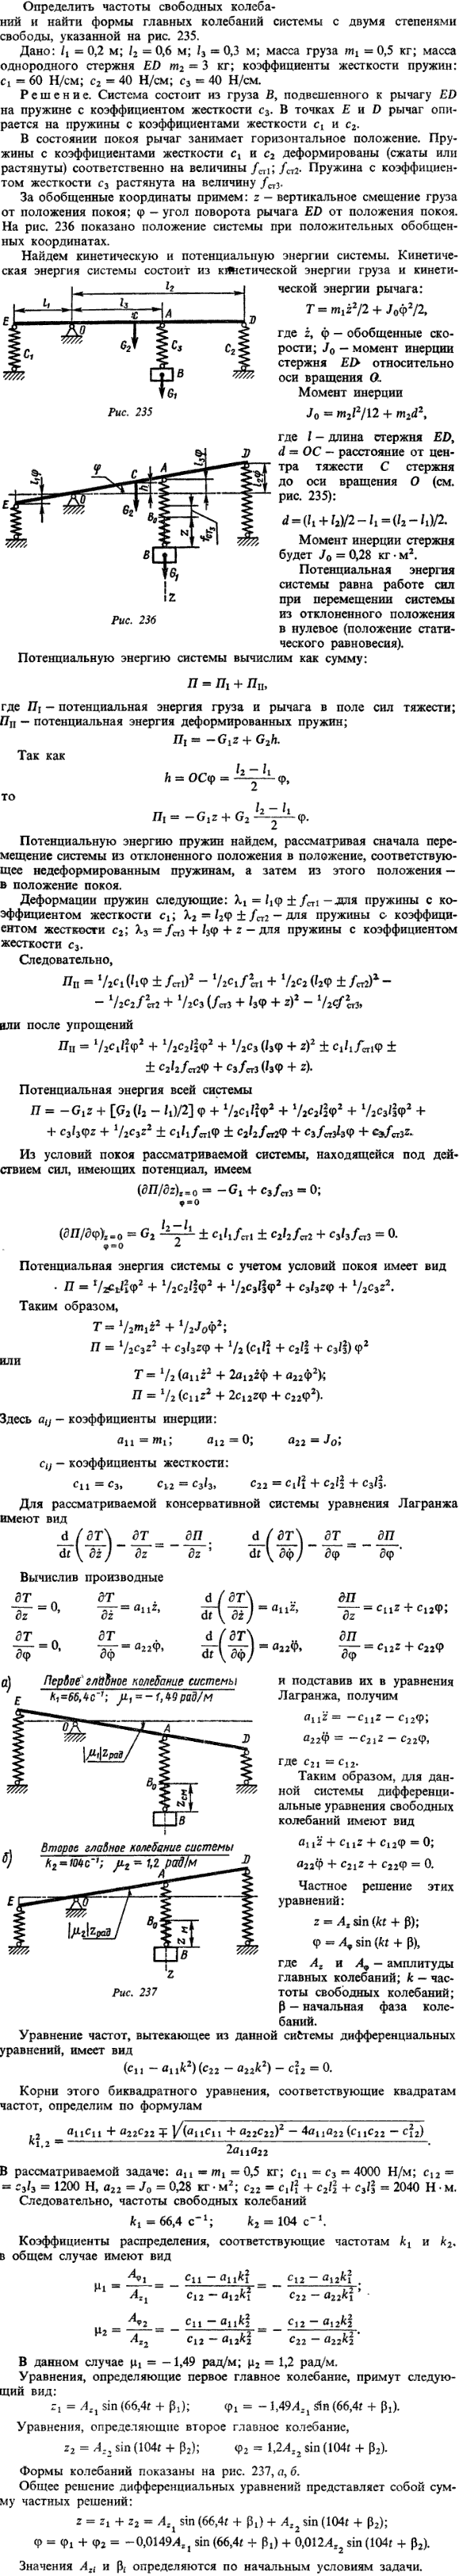 Д24 пример решения 1. Определить частоты свободных колебаний и найти формы главных колебаний системы с двумя степенями свободы, указанной на